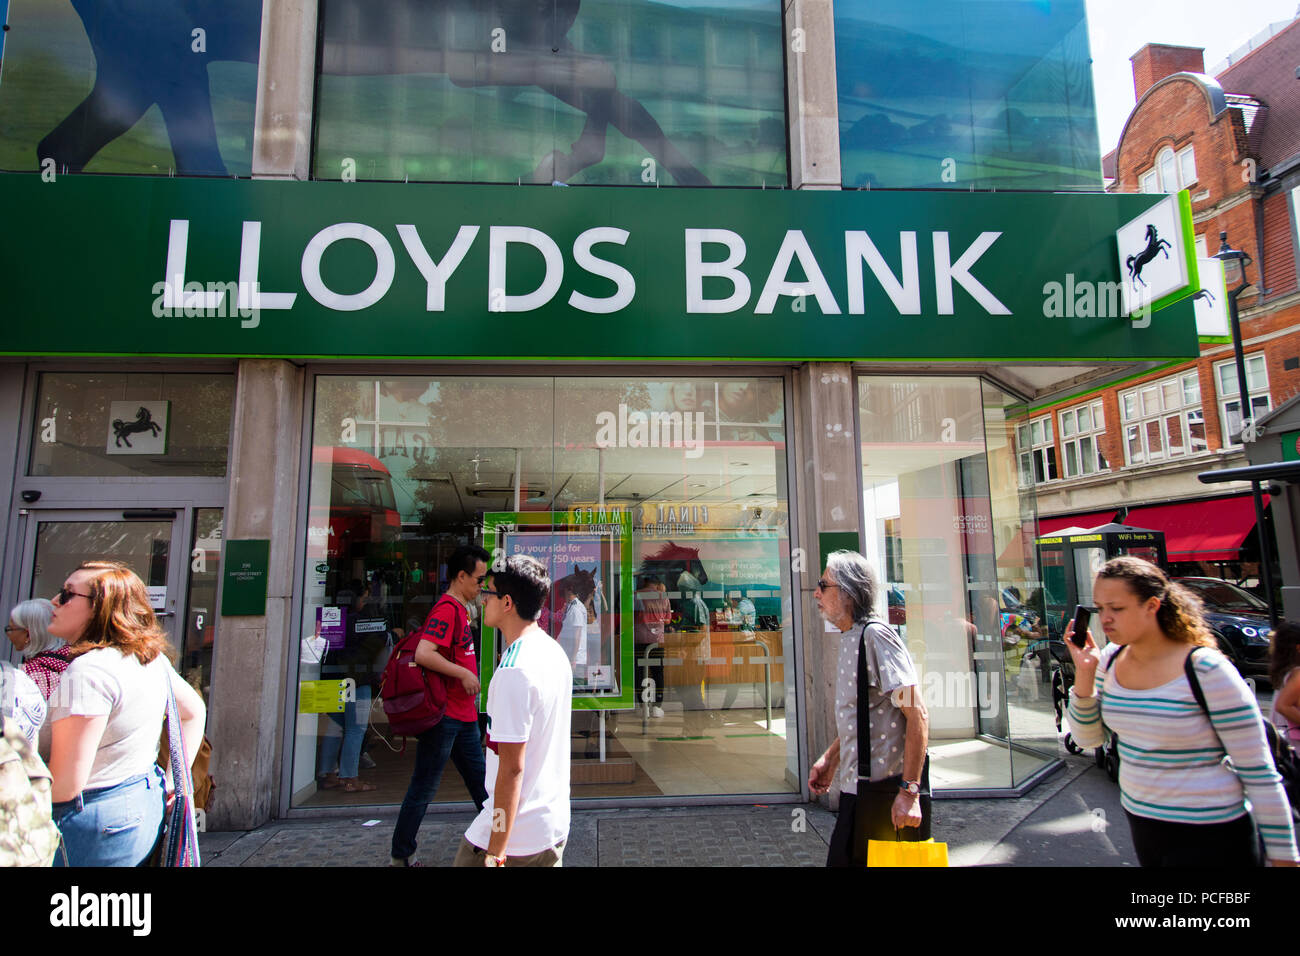 Londres, Royaume-Uni - 31 juillet 2018 : la banque Lloyds store front sur Oxford Street, au centre de Londres. Banque D'Images